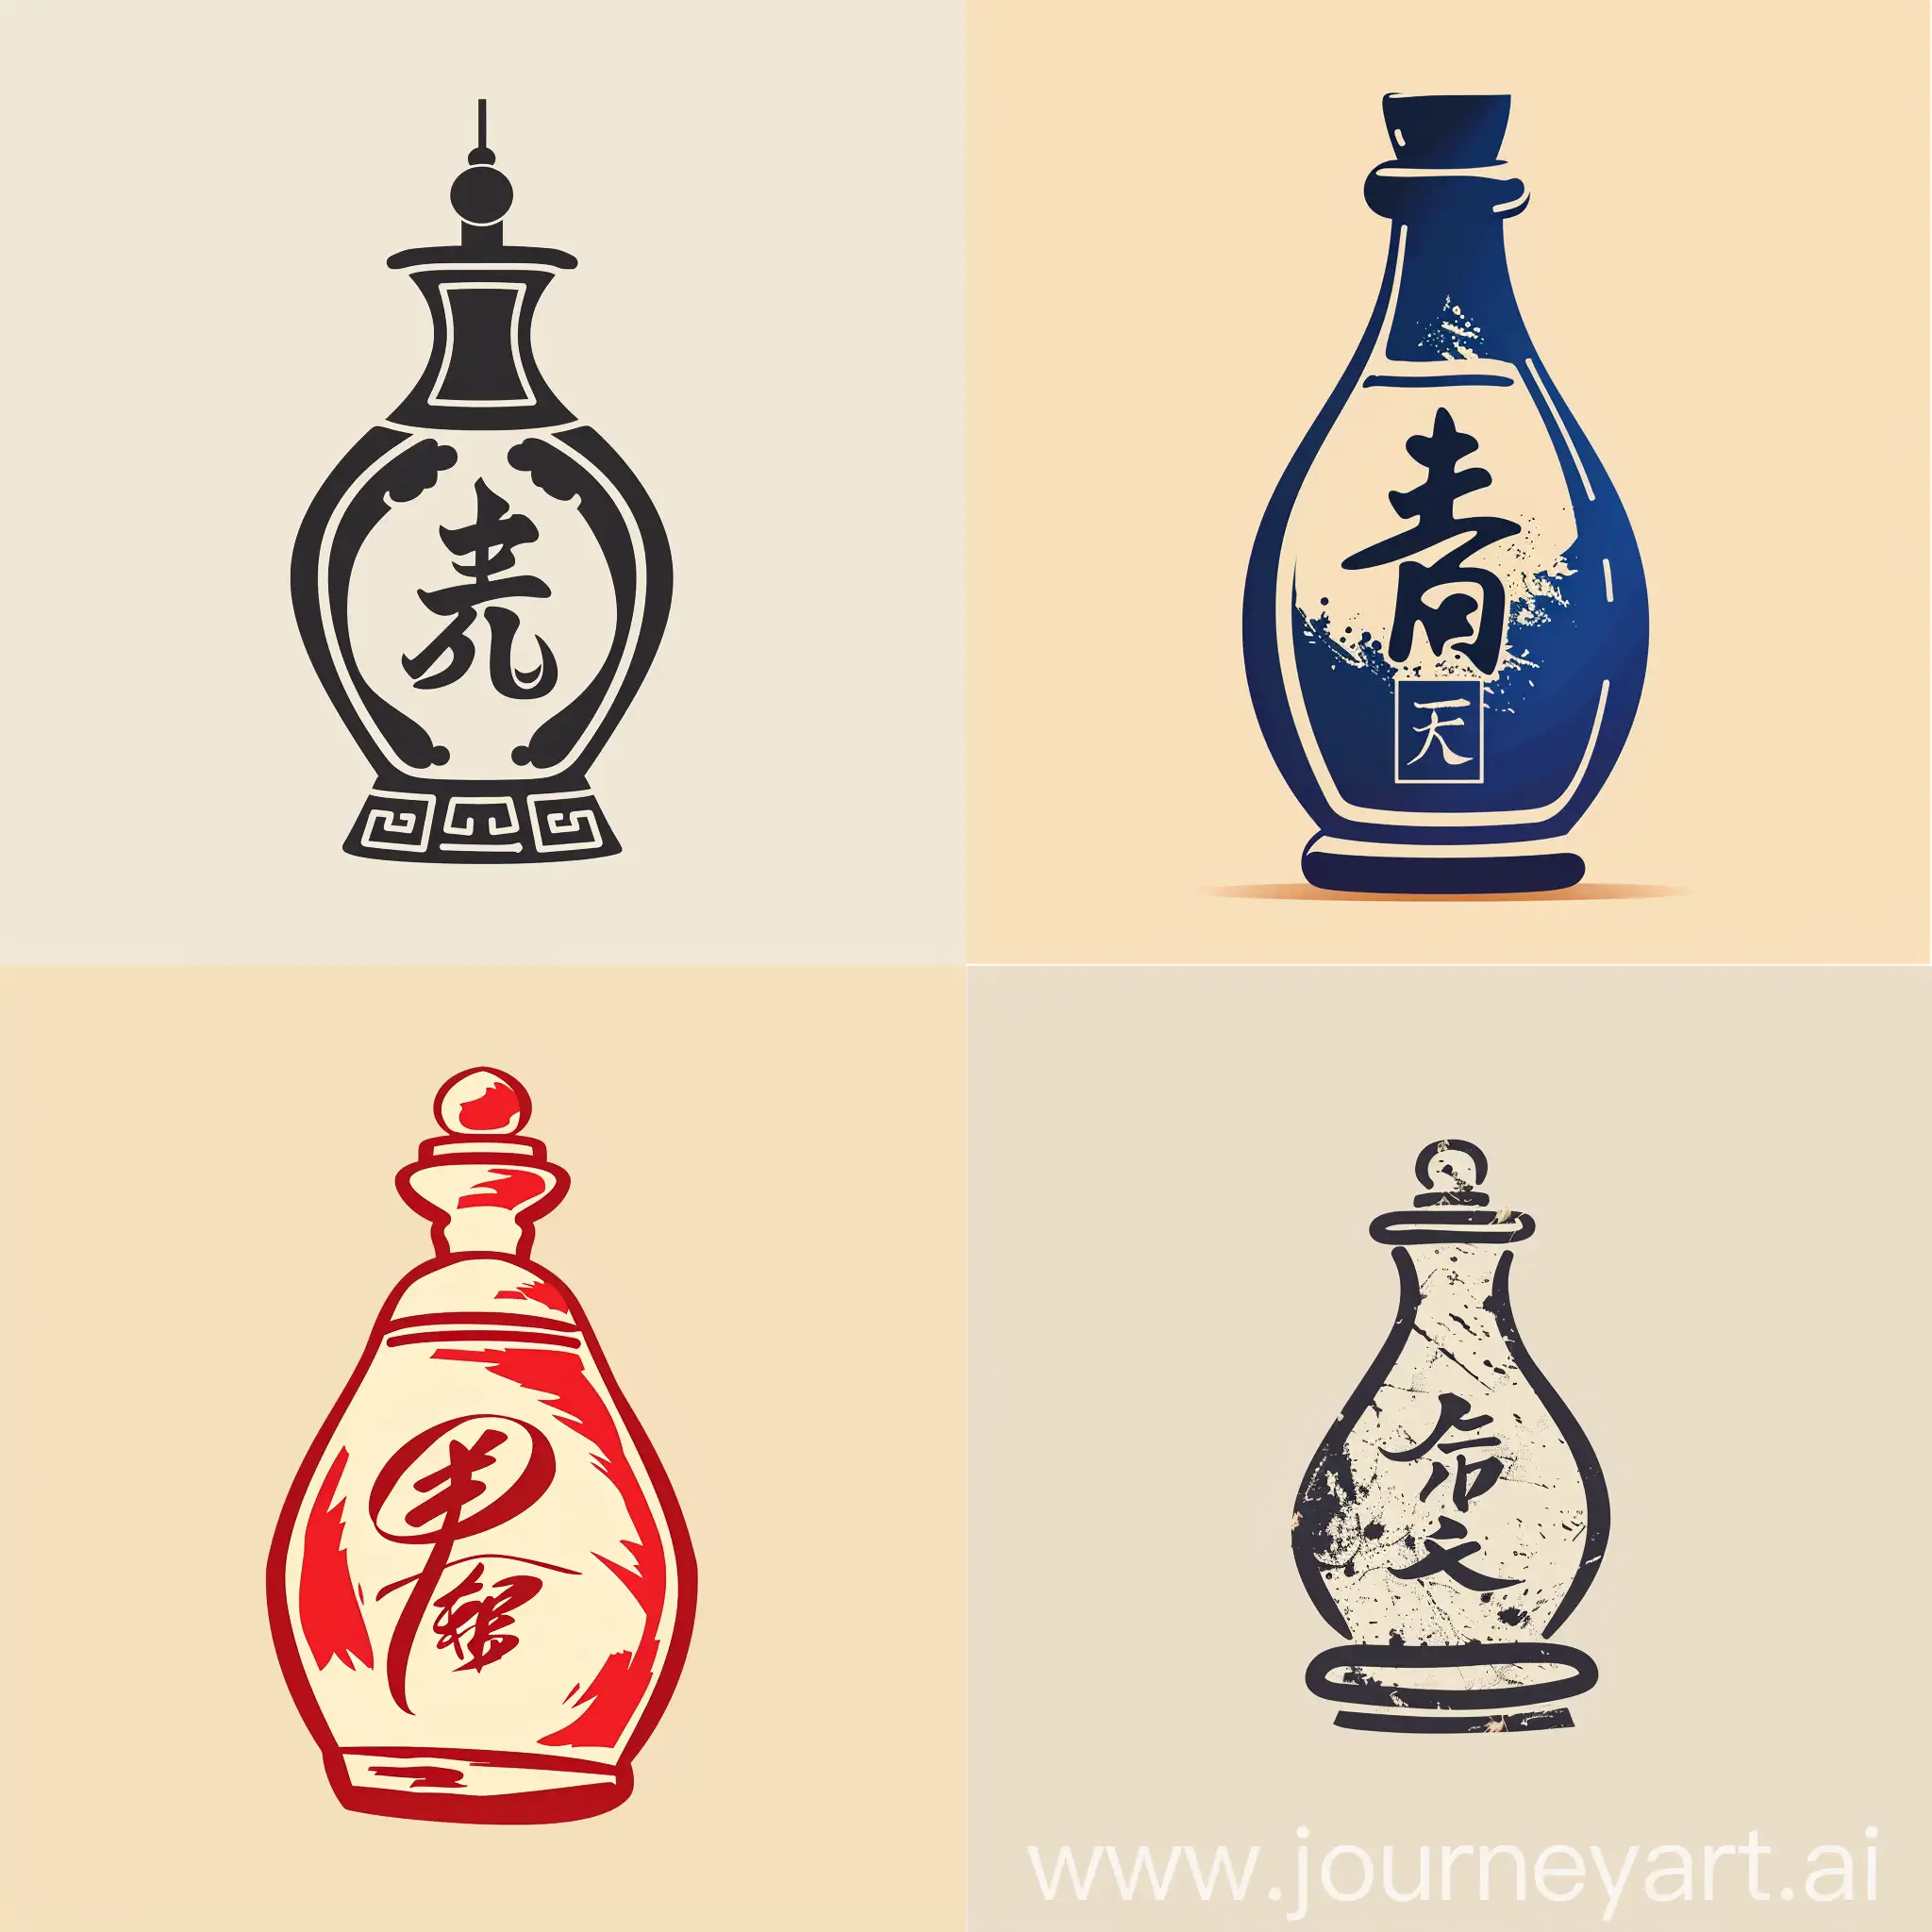 做一个logo
用陶瓷瓶的形状
中国风
